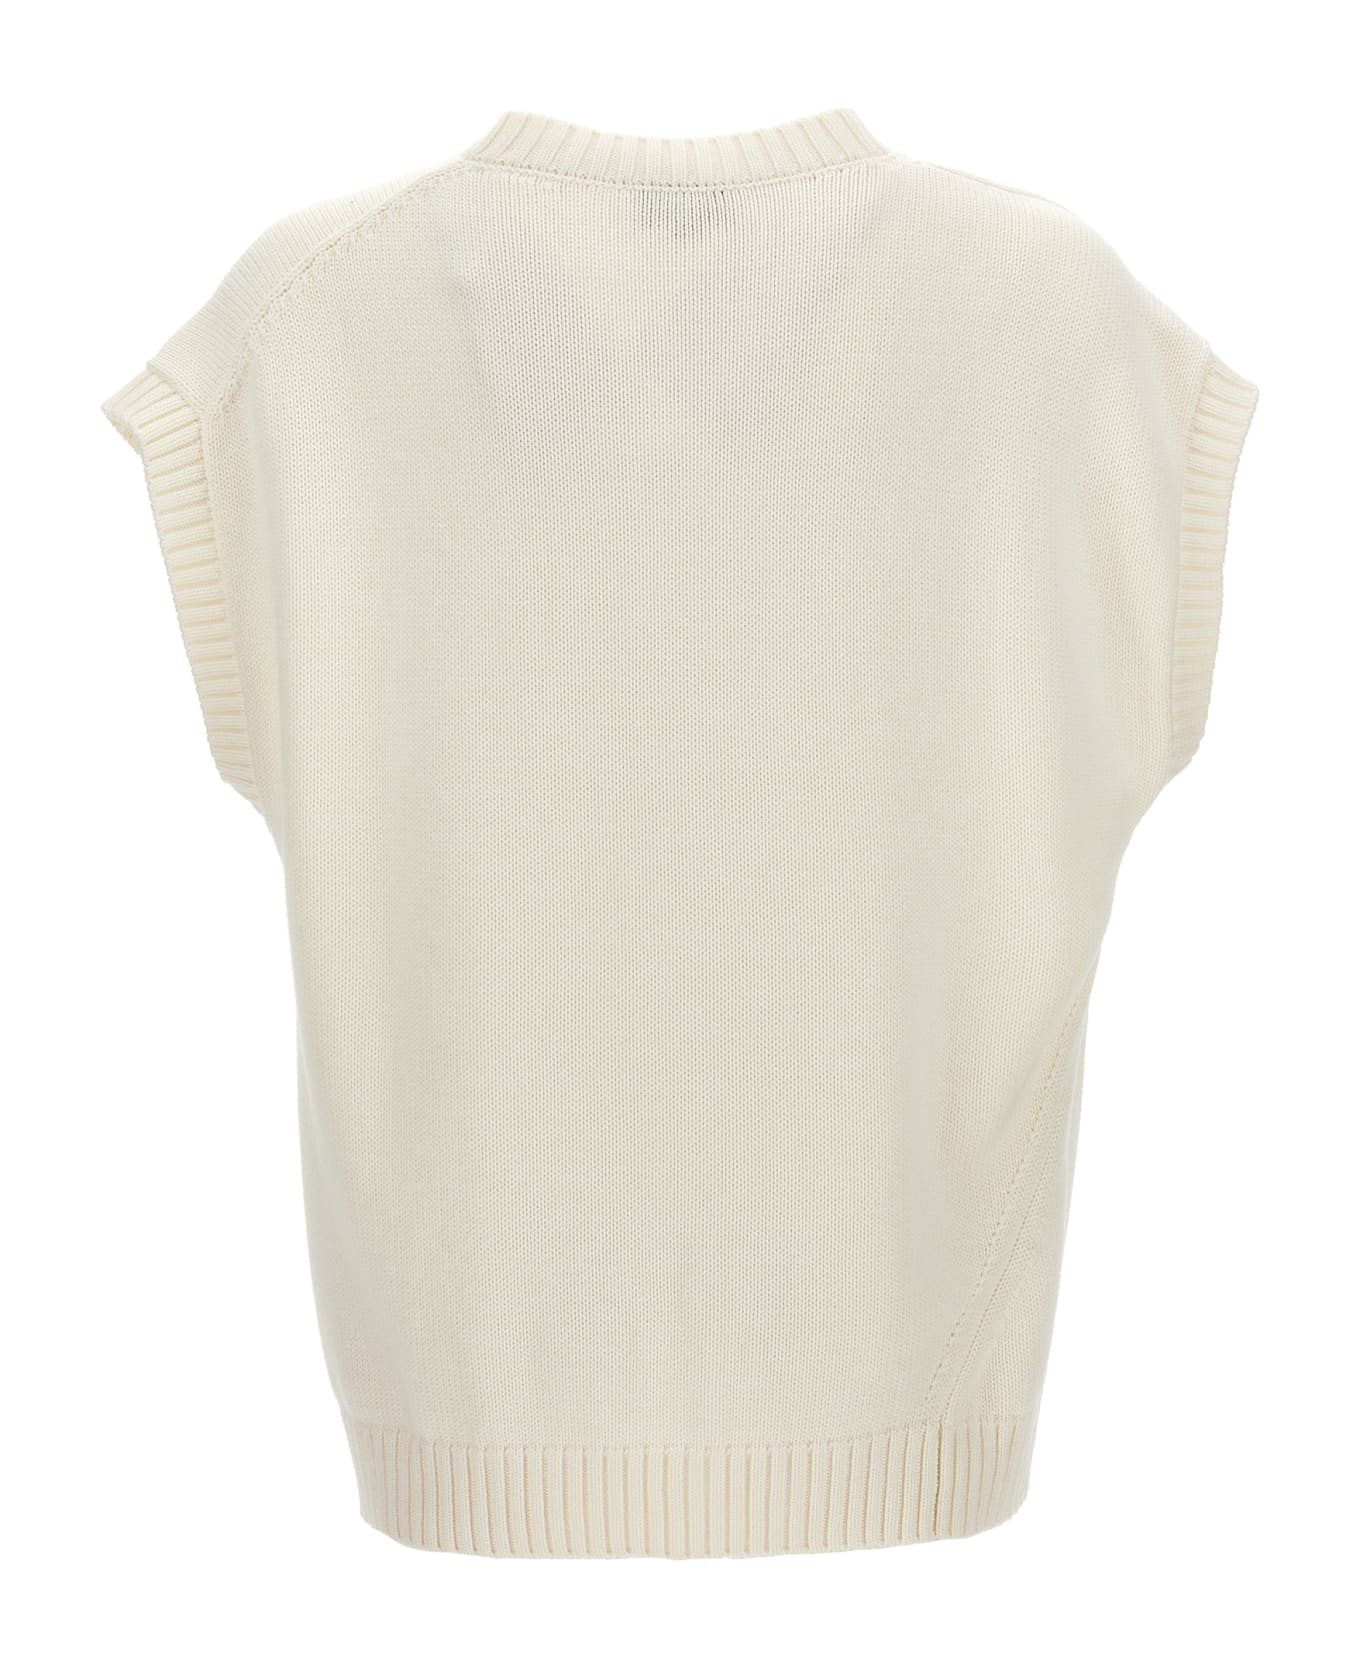 Hed Mayner Knit Vest - White